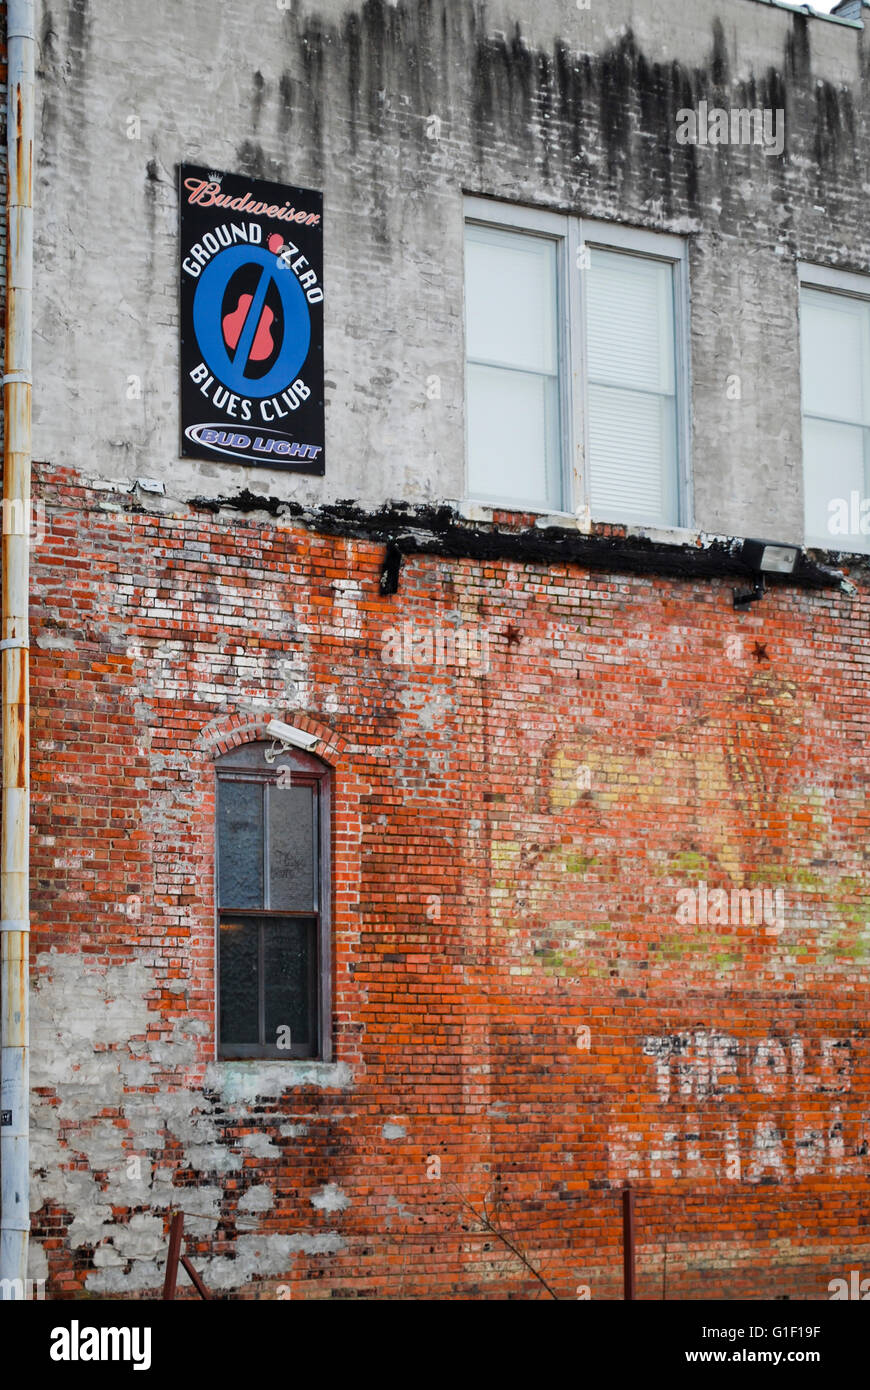 Le légendaire Ground Zero Blues club à Clarksdale Mississippi USA Banque D'Images